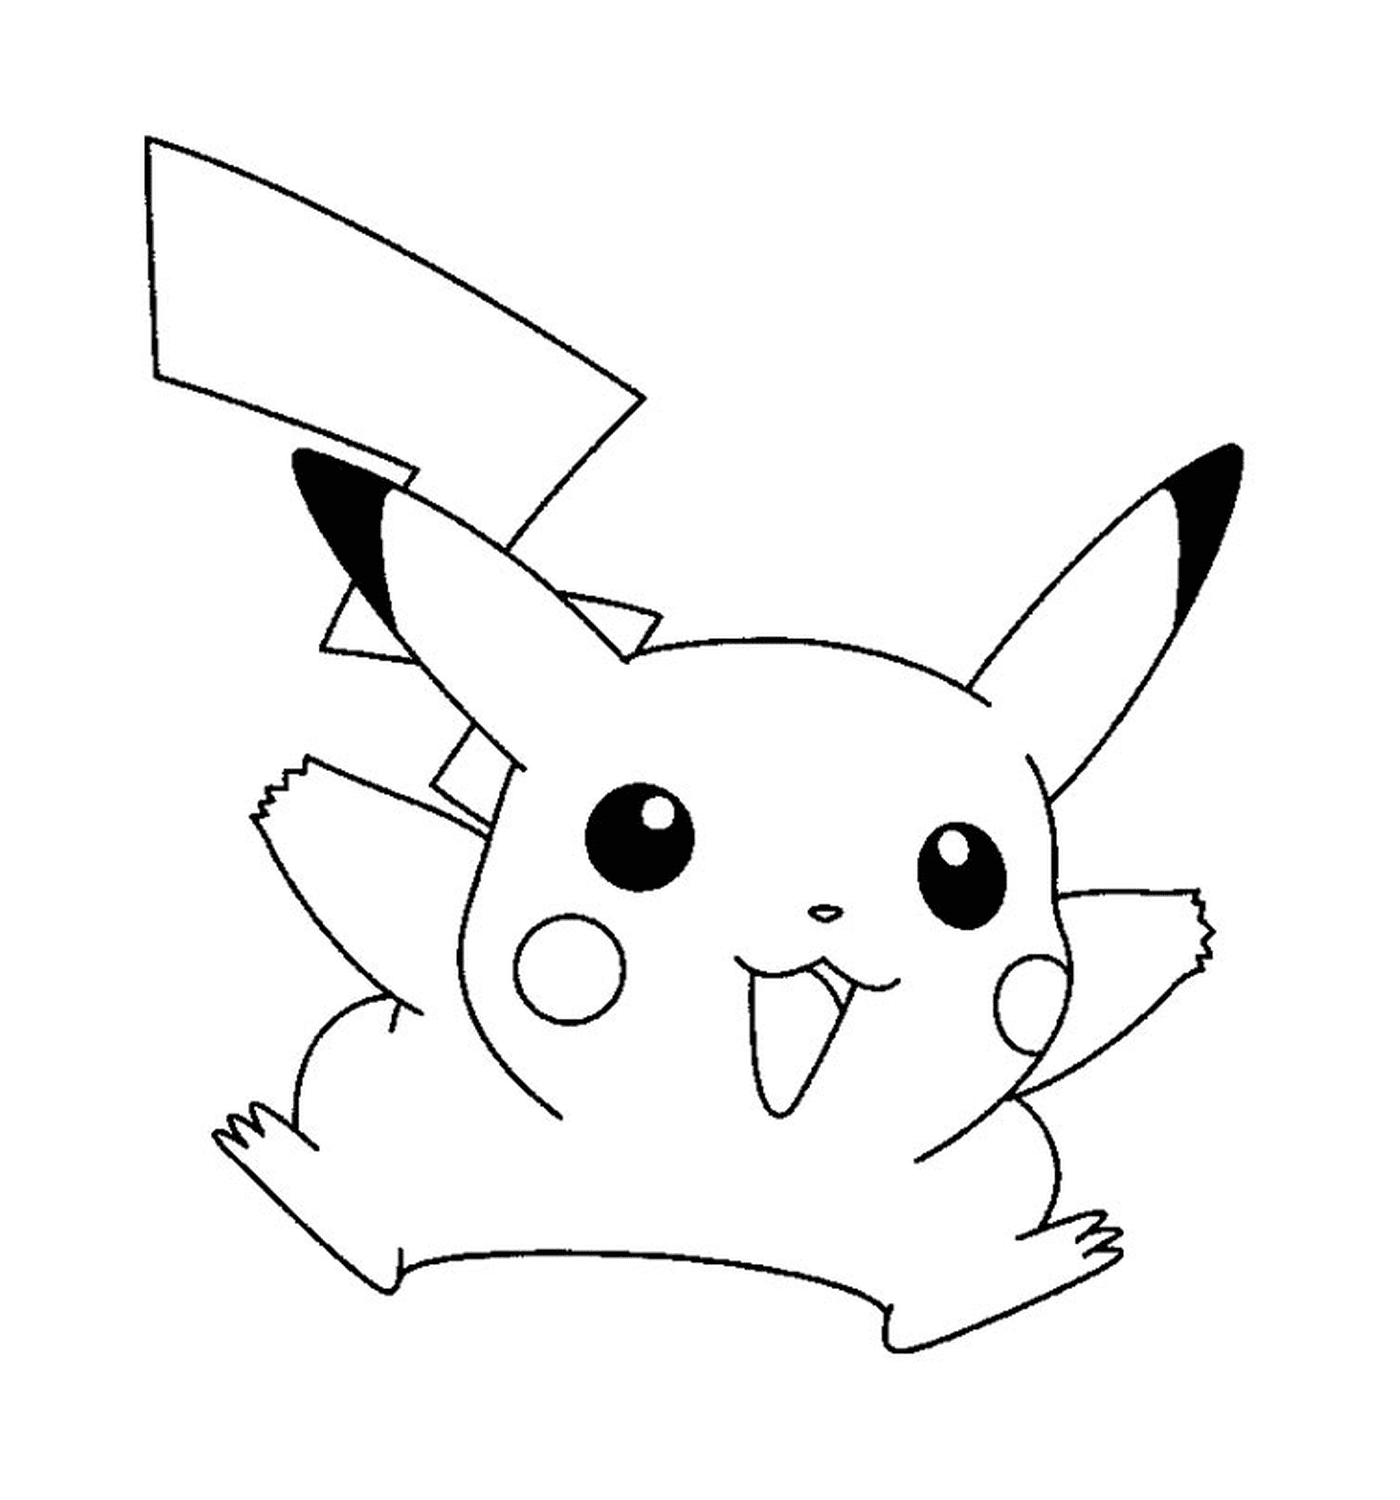   Pikachu mignon et facile à dessiner 